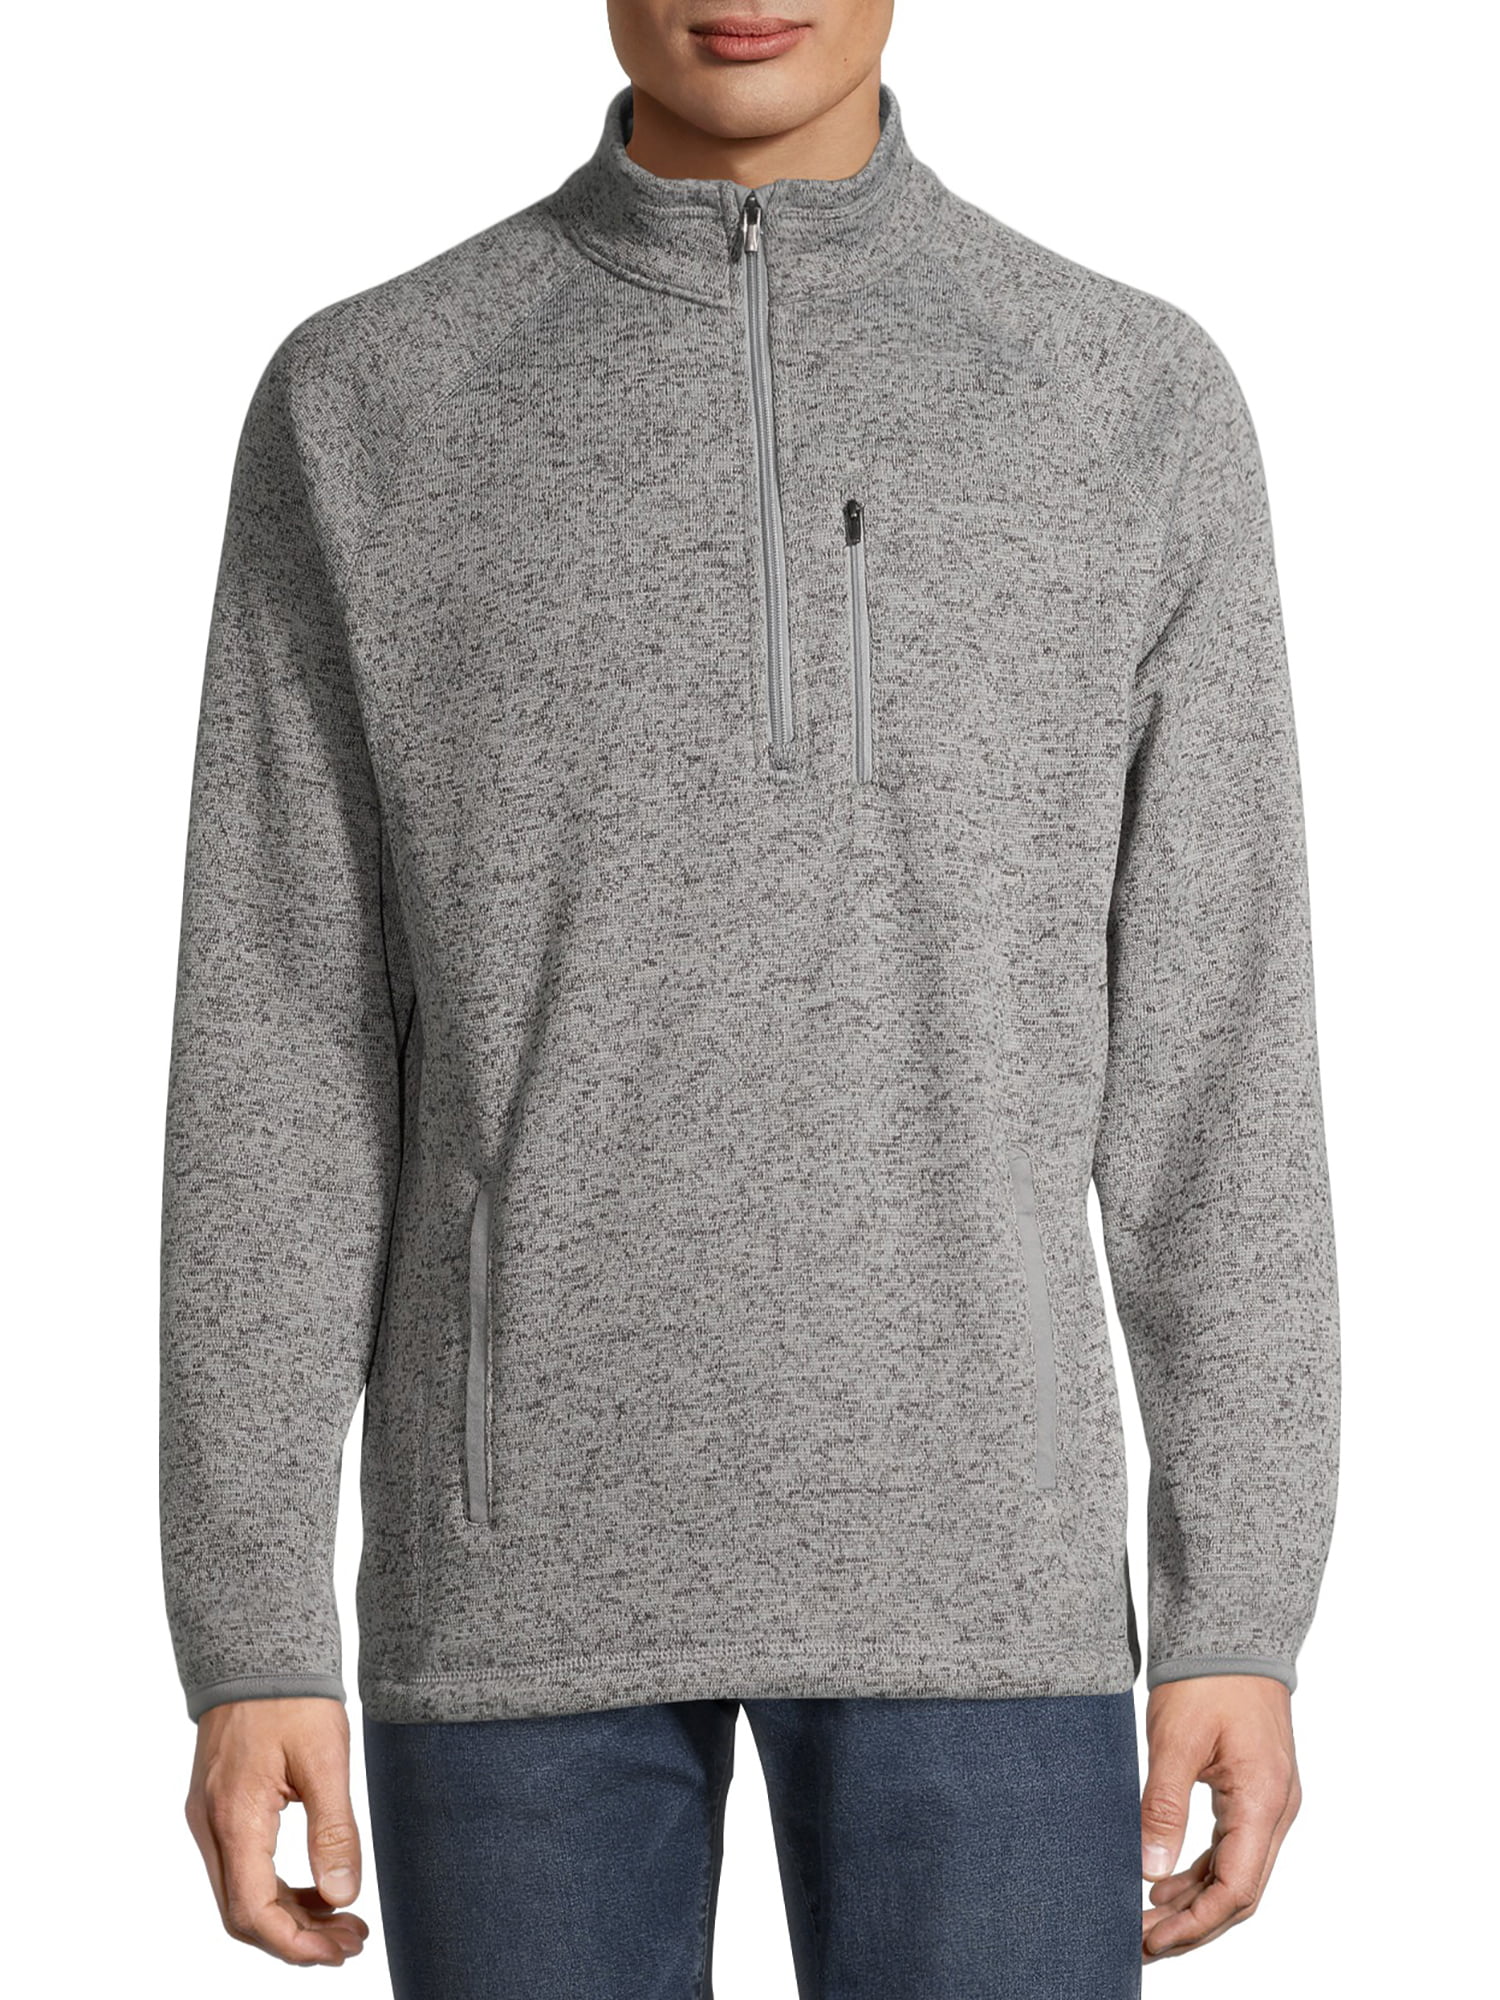 George Men's and Big Men's Half Zip Sweater Fleece, Up to Size 5XL ...